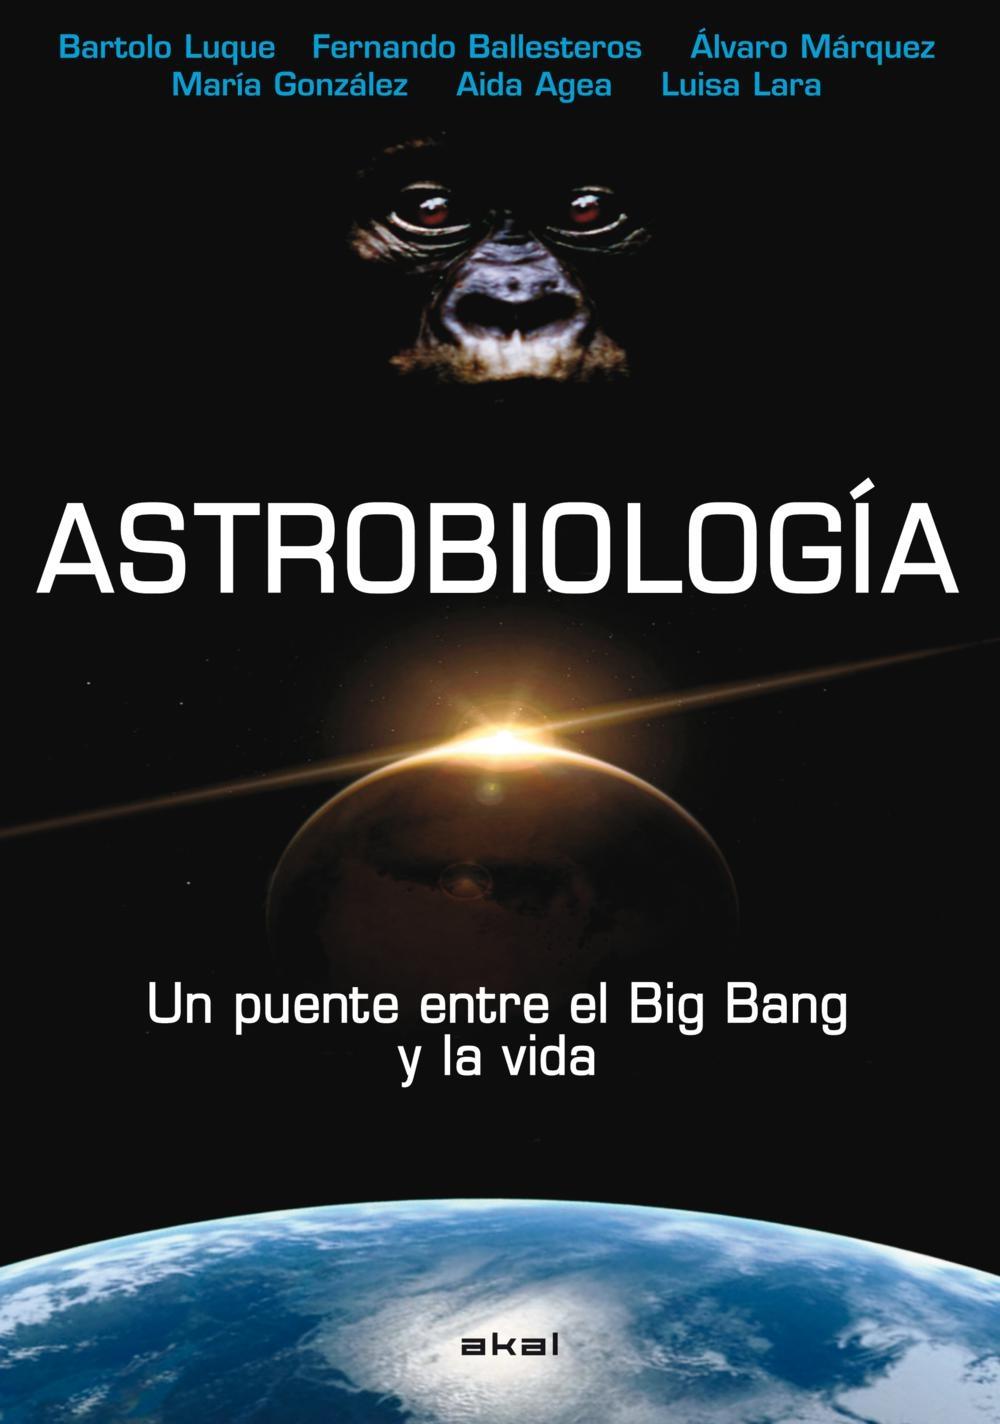 Astrobiología "Un puente entre el Big Bang y la vida"